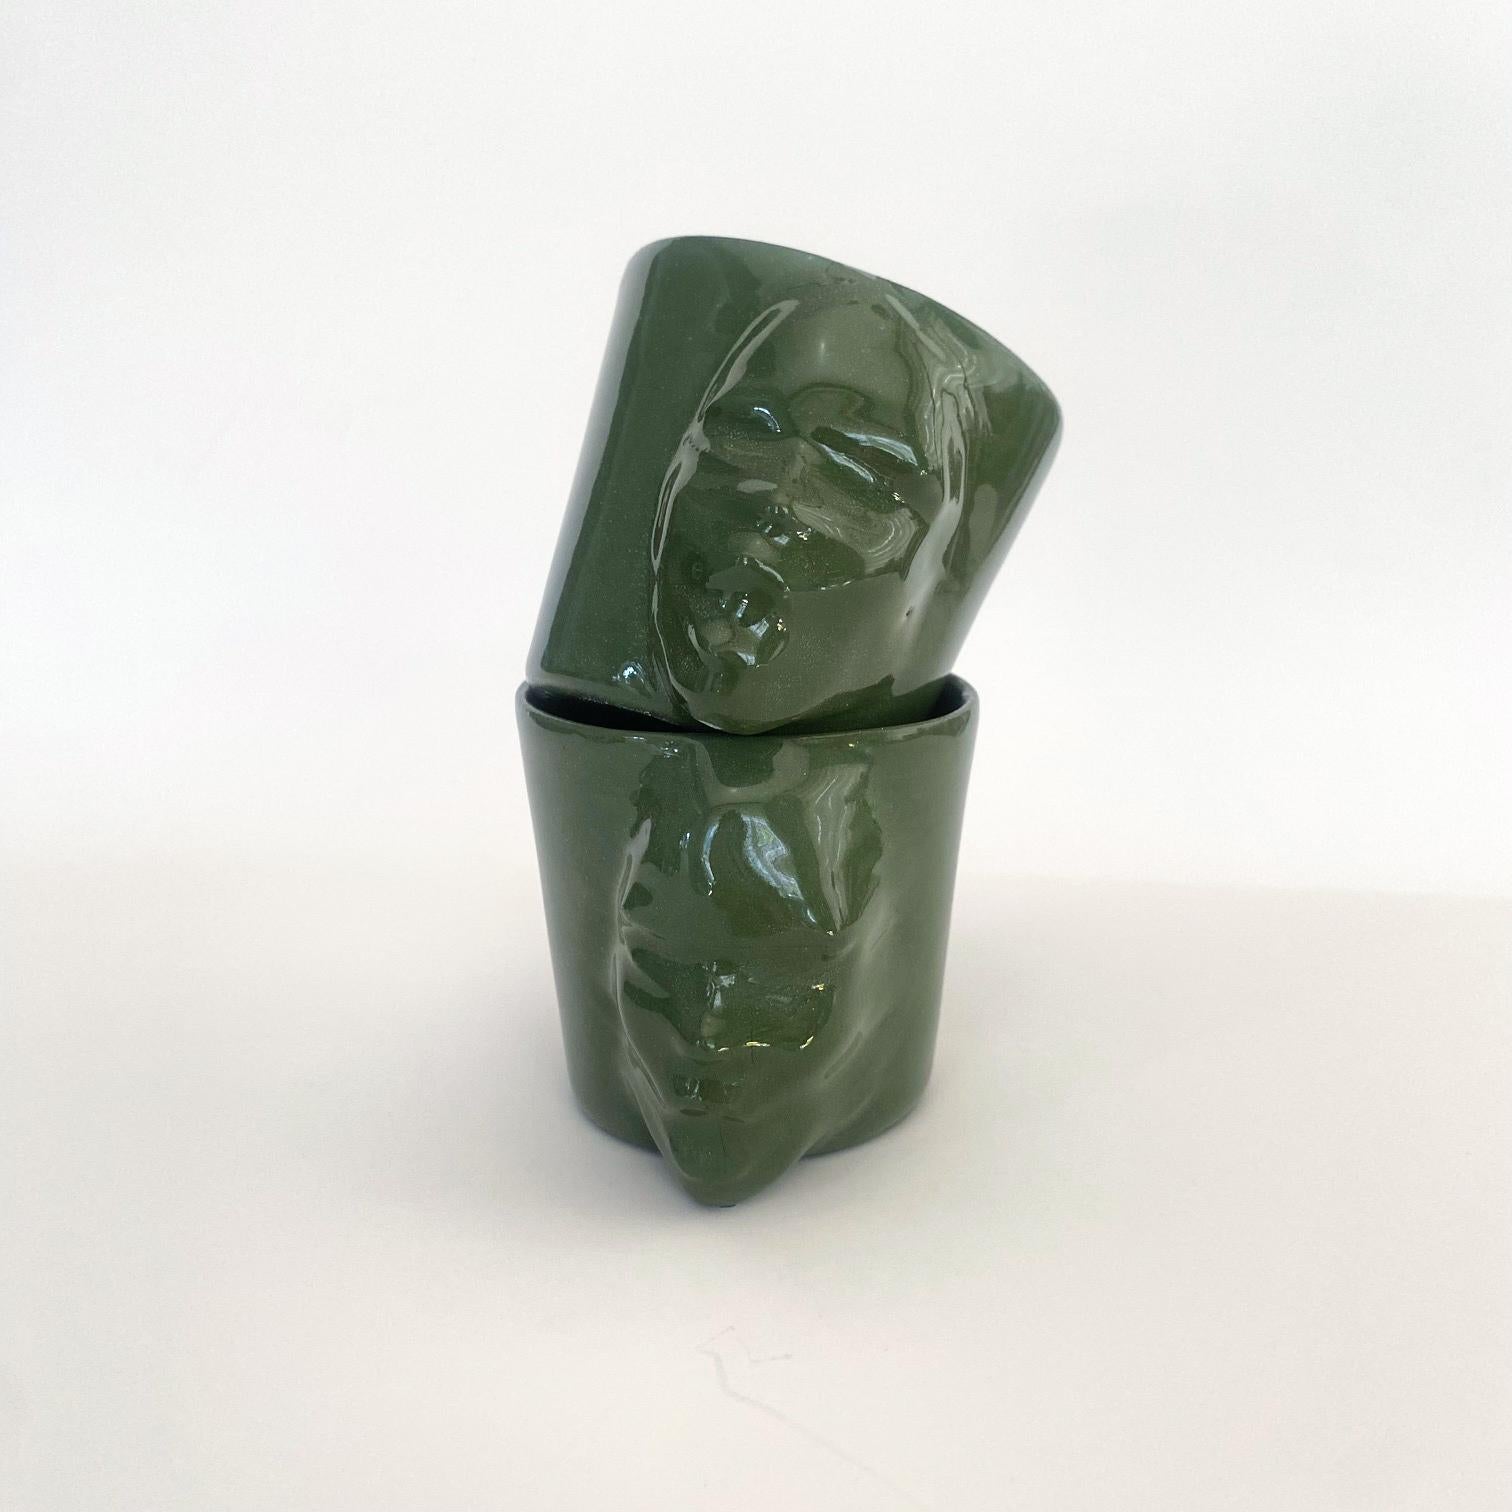 Un ensemble de 2 tasses sculpturales en porcelaine fabriquées à la main par l'artiste céramiste Hulya Sozer. 
Glaçage alimentaire.
Lavable au lave-vaisselle.

Hauteur : 6cm / Profondeur : 8cm / Diamètre : 6cm
Volume : 100ml
Le set comprend 2 tasses